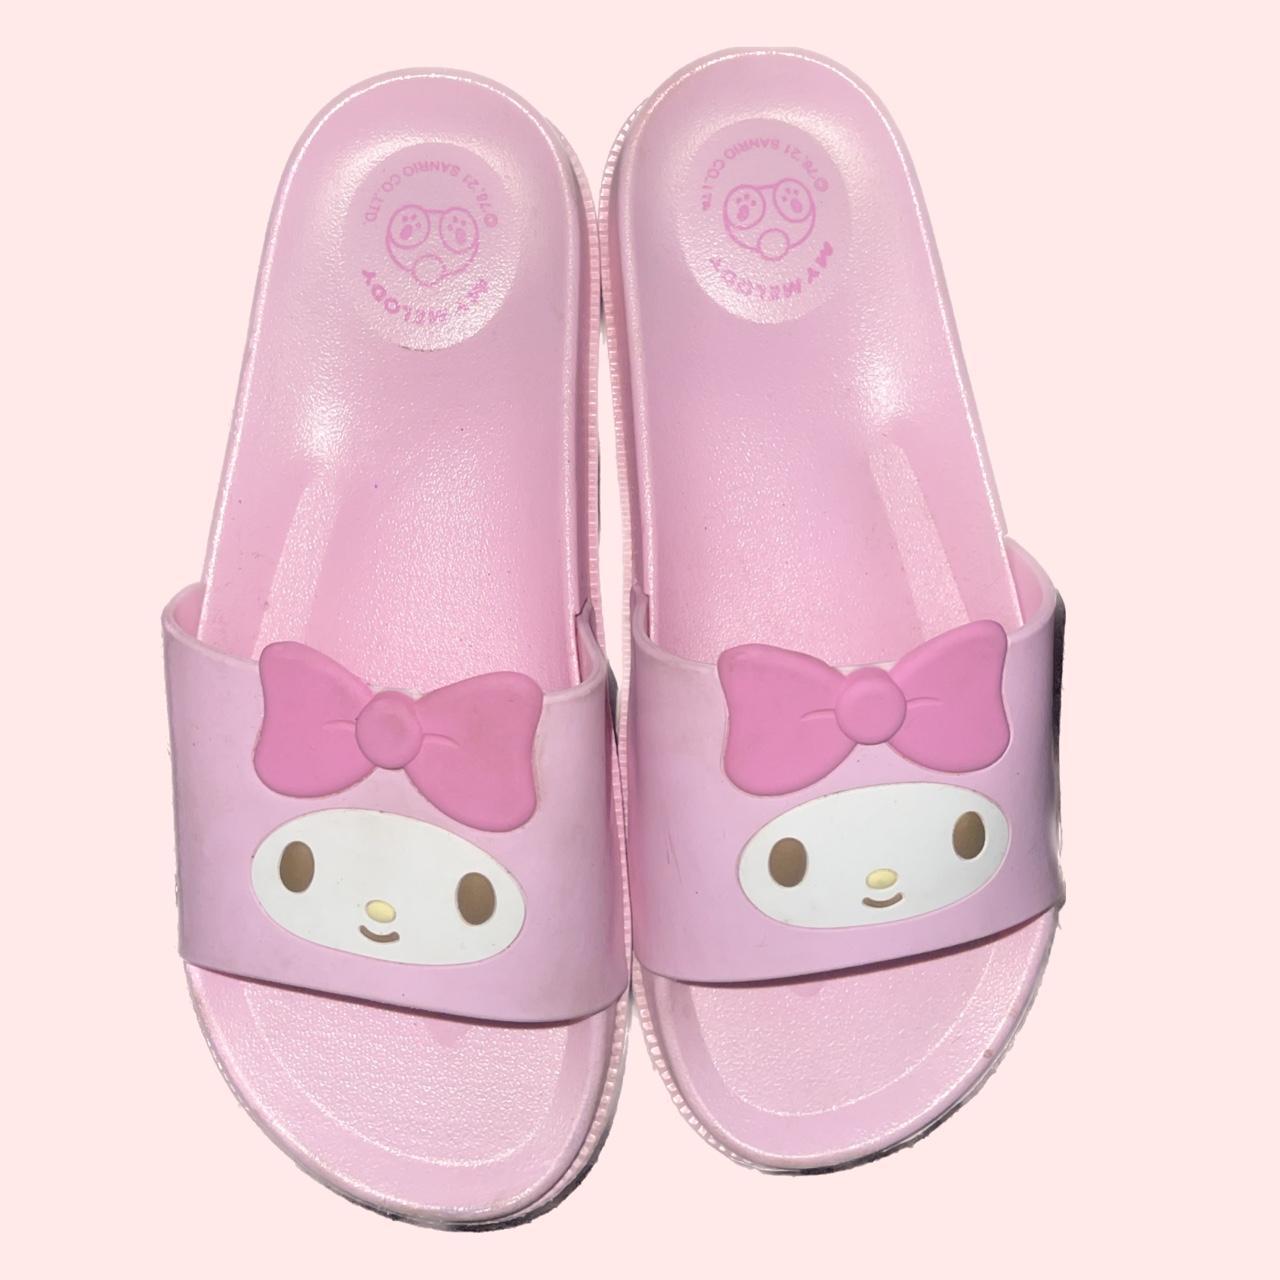 Sanrio Women's Pink Slides | Depop